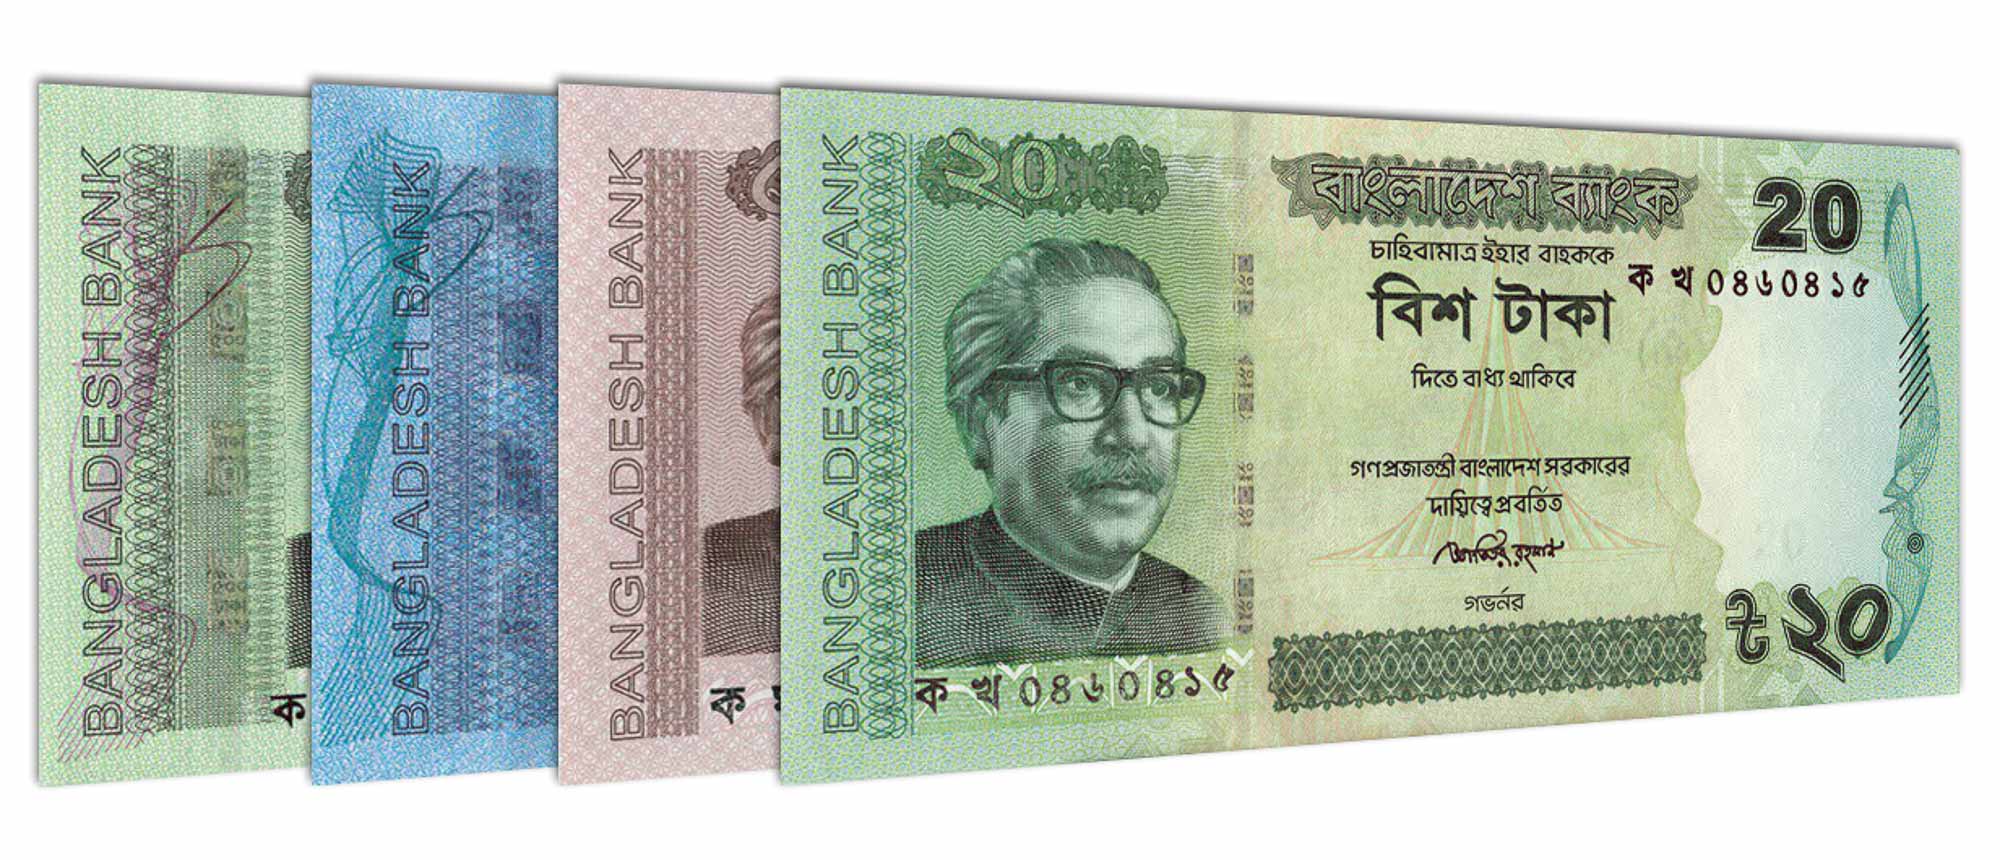 Automotivo xm taka taka taka taka. Бангладешская така 1000. Така валюта Бангладеш. Бангладешская така фото. Валюта Бангладеш фото.